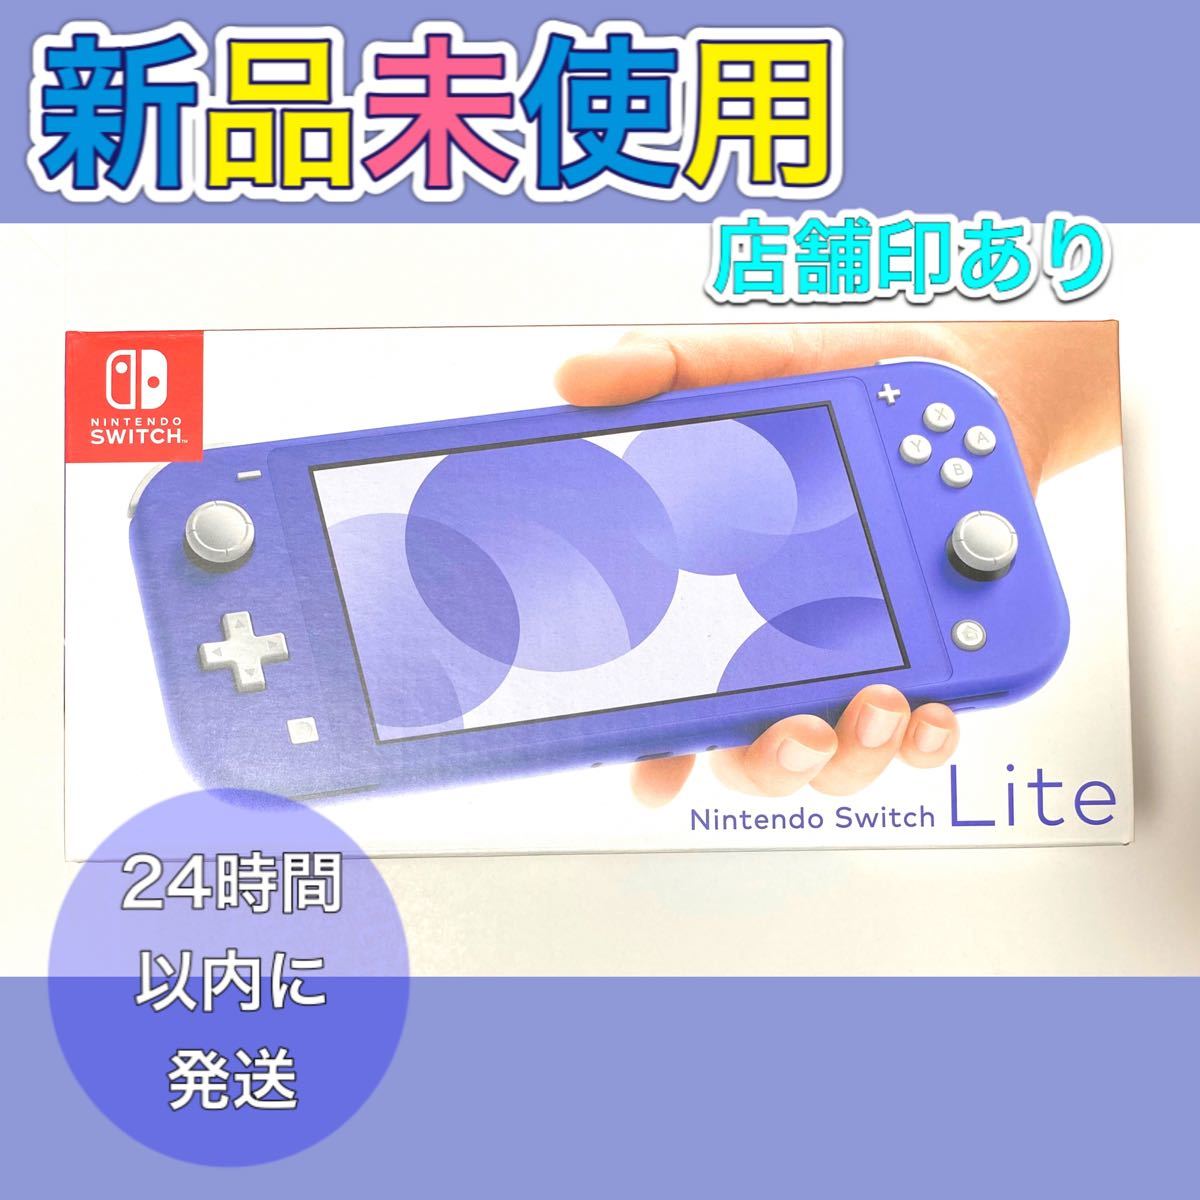 Nintendo Switch NINTENDO SWITCH LITE スイッチライト 本体 新色ブルー 新品未使用 新品未開封